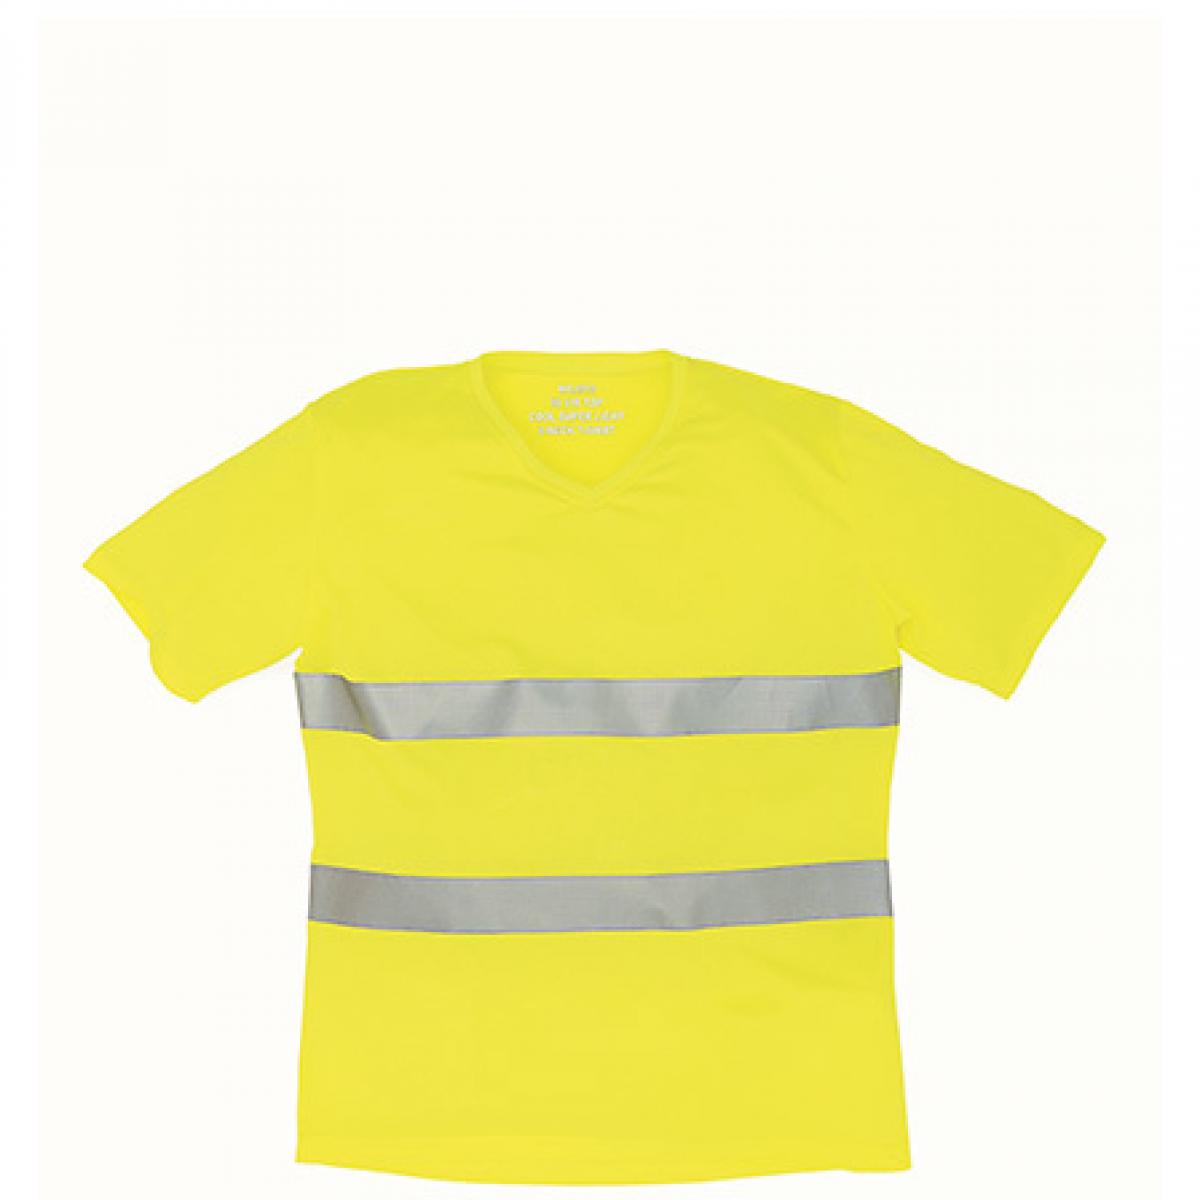 Hersteller: YOKO Herstellernummer: HVJ910 Artikelbezeichnung: Herren Hi Vis Top Cool Super Light V-Neck Arbeits T-Shirt Farbe: Hi-Vis Yellow